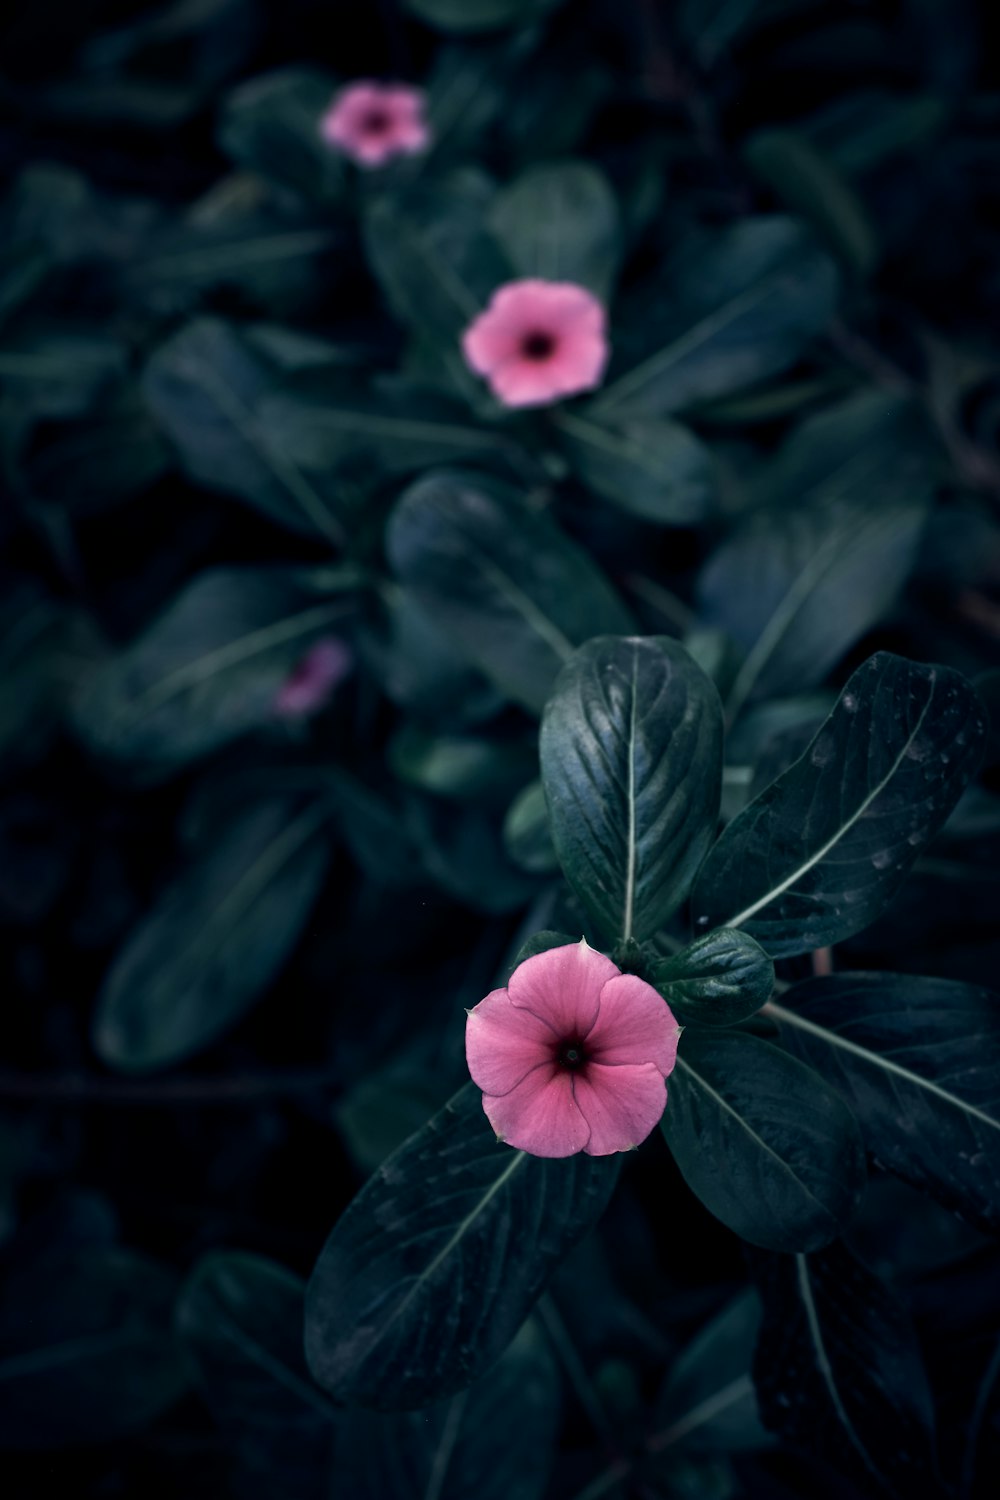 eine rosa Blume, die auf einer üppigen grünen Pflanze sitzt